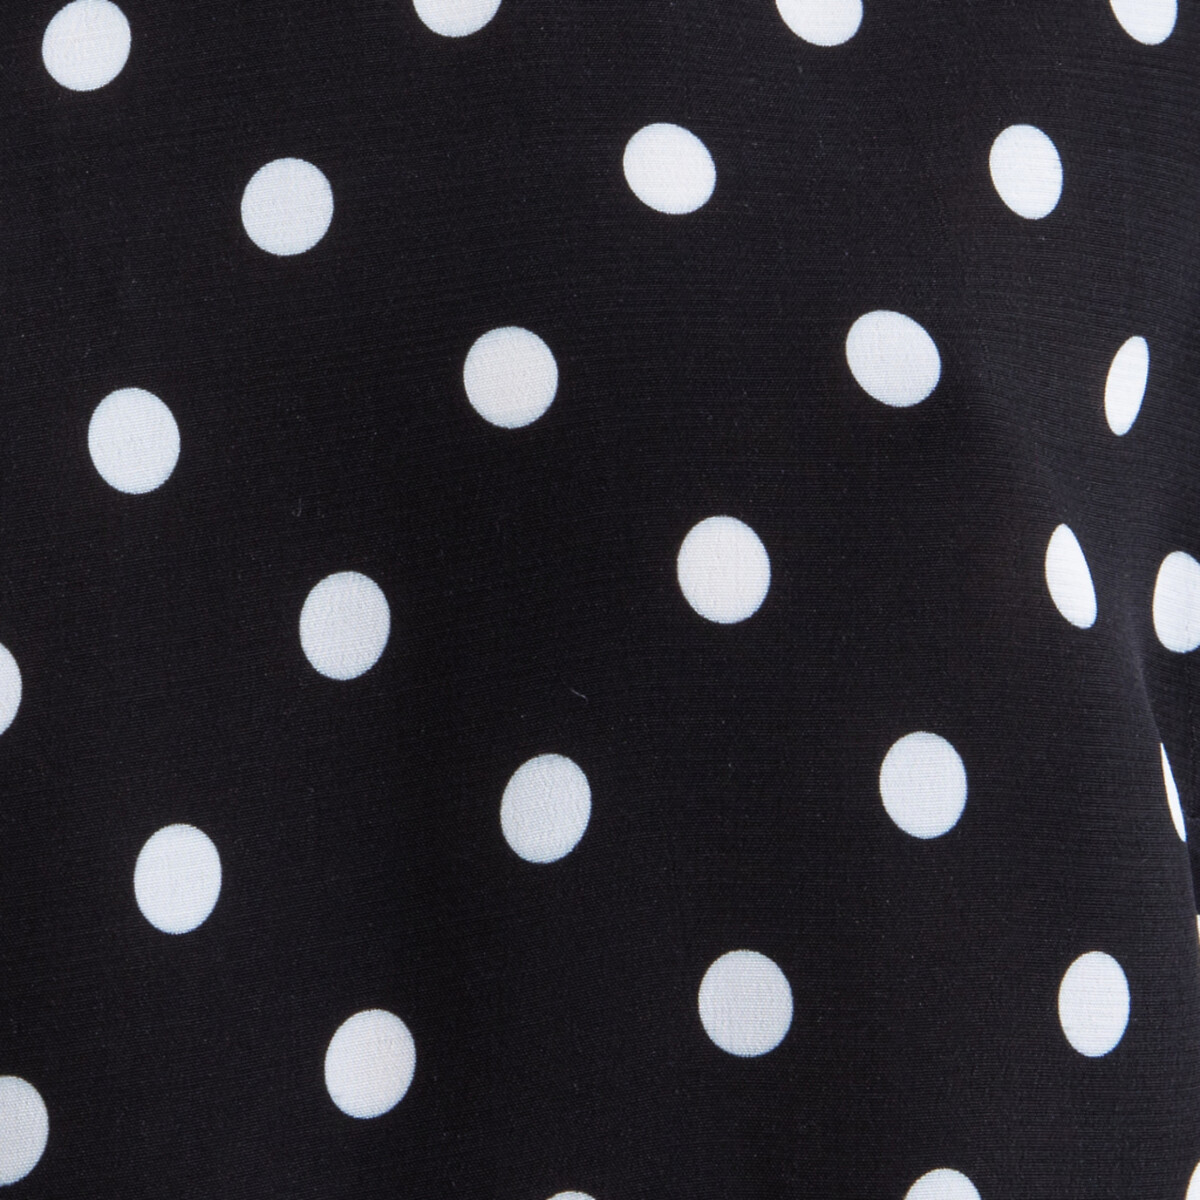 Блузка La Redoute В горошек с короткими рукавами ROMANE 38 (FR) - 44 (RUS) черный, размер 38 (FR) - 44 (RUS) В горошек с короткими рукавами ROMANE 38 (FR) - 44 (RUS) черный - фото 4